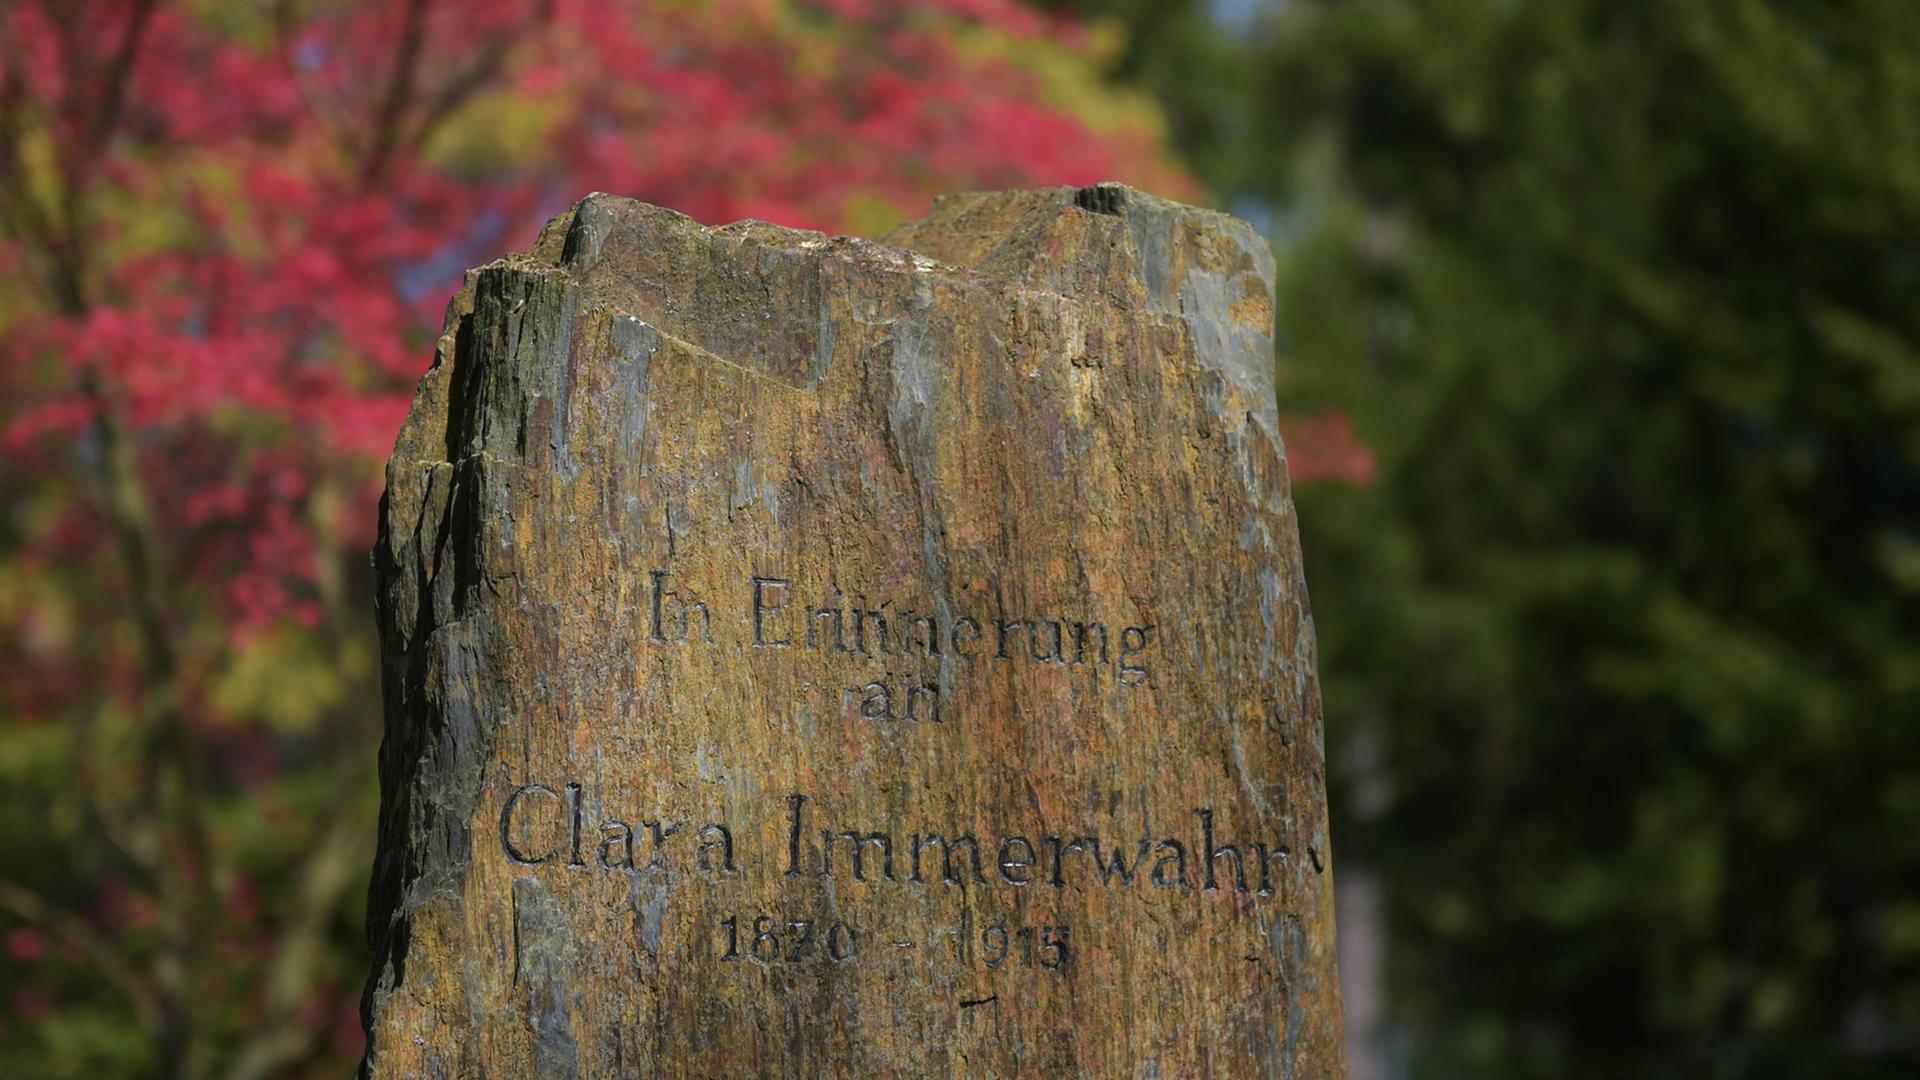 Der Gedenkstein von Clara Immerwahr (1870-1915) steht am 23.04.2015 im Garten des Fritz-Haber-Instituts der Max-Planck-Gesellschaft in Berlin-Dahlem